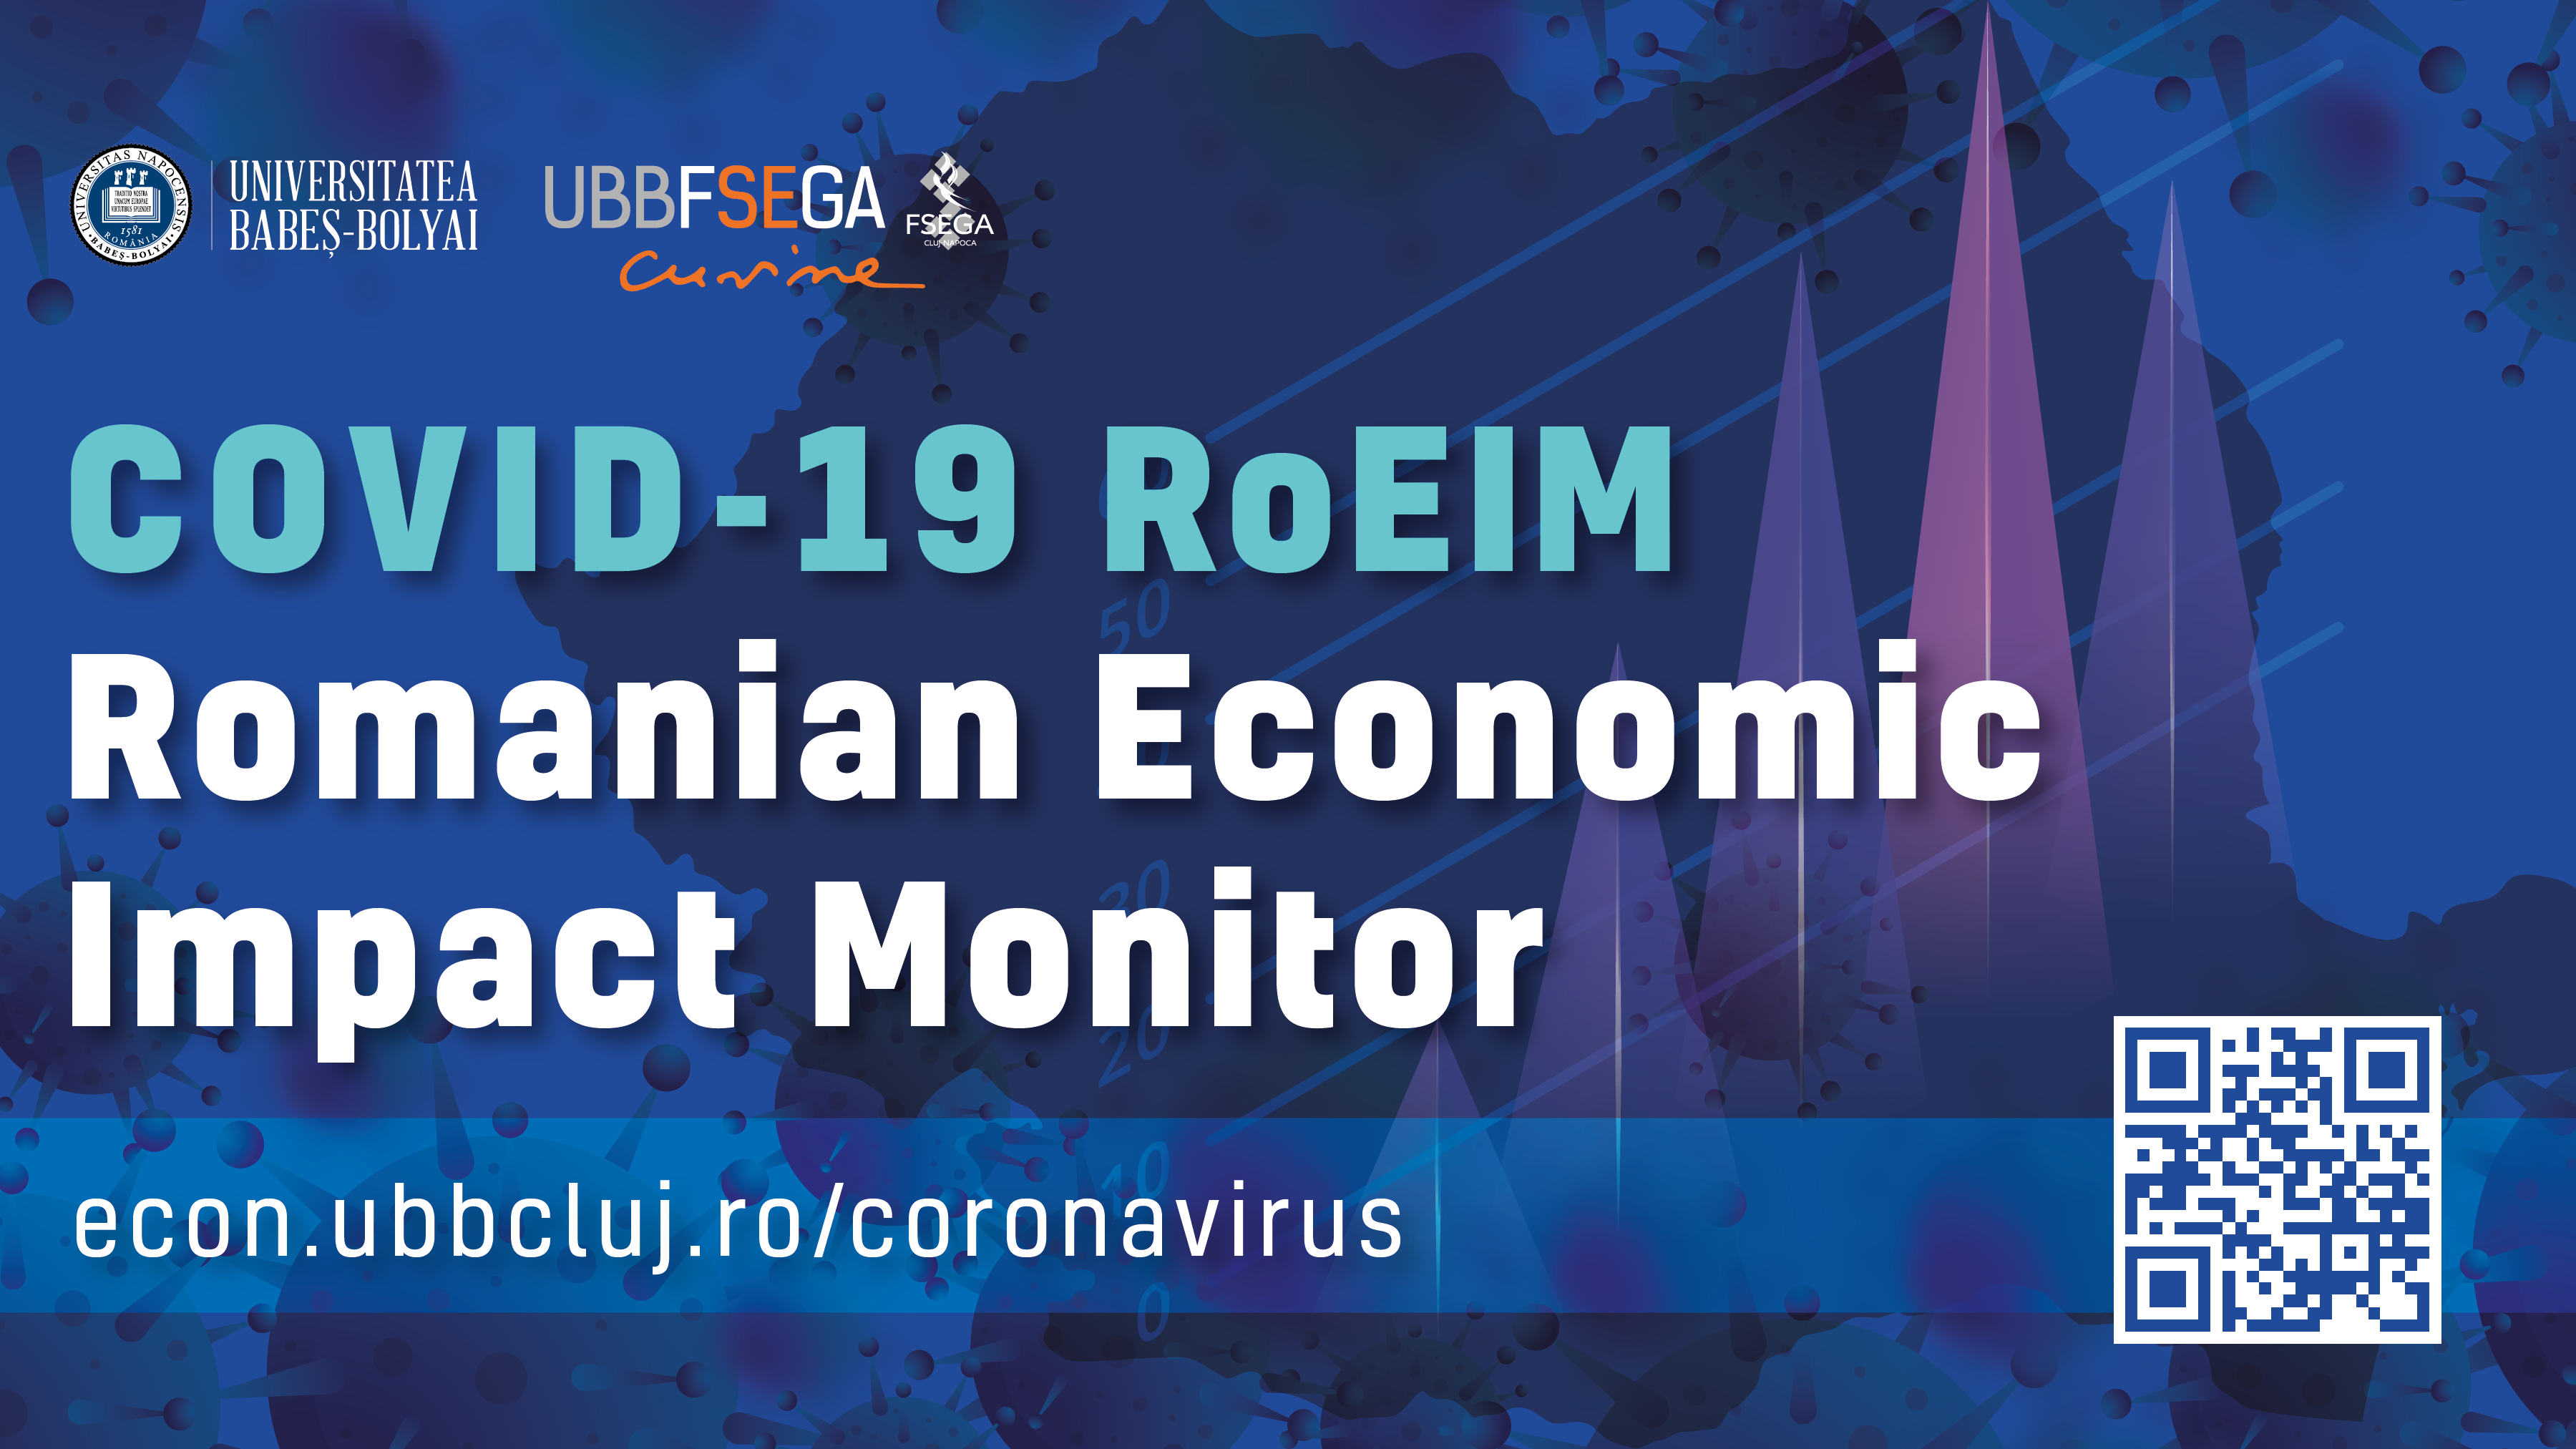 COVID-19 – Romanian Economic Impact Monitor (COVID-19 RoEIM)